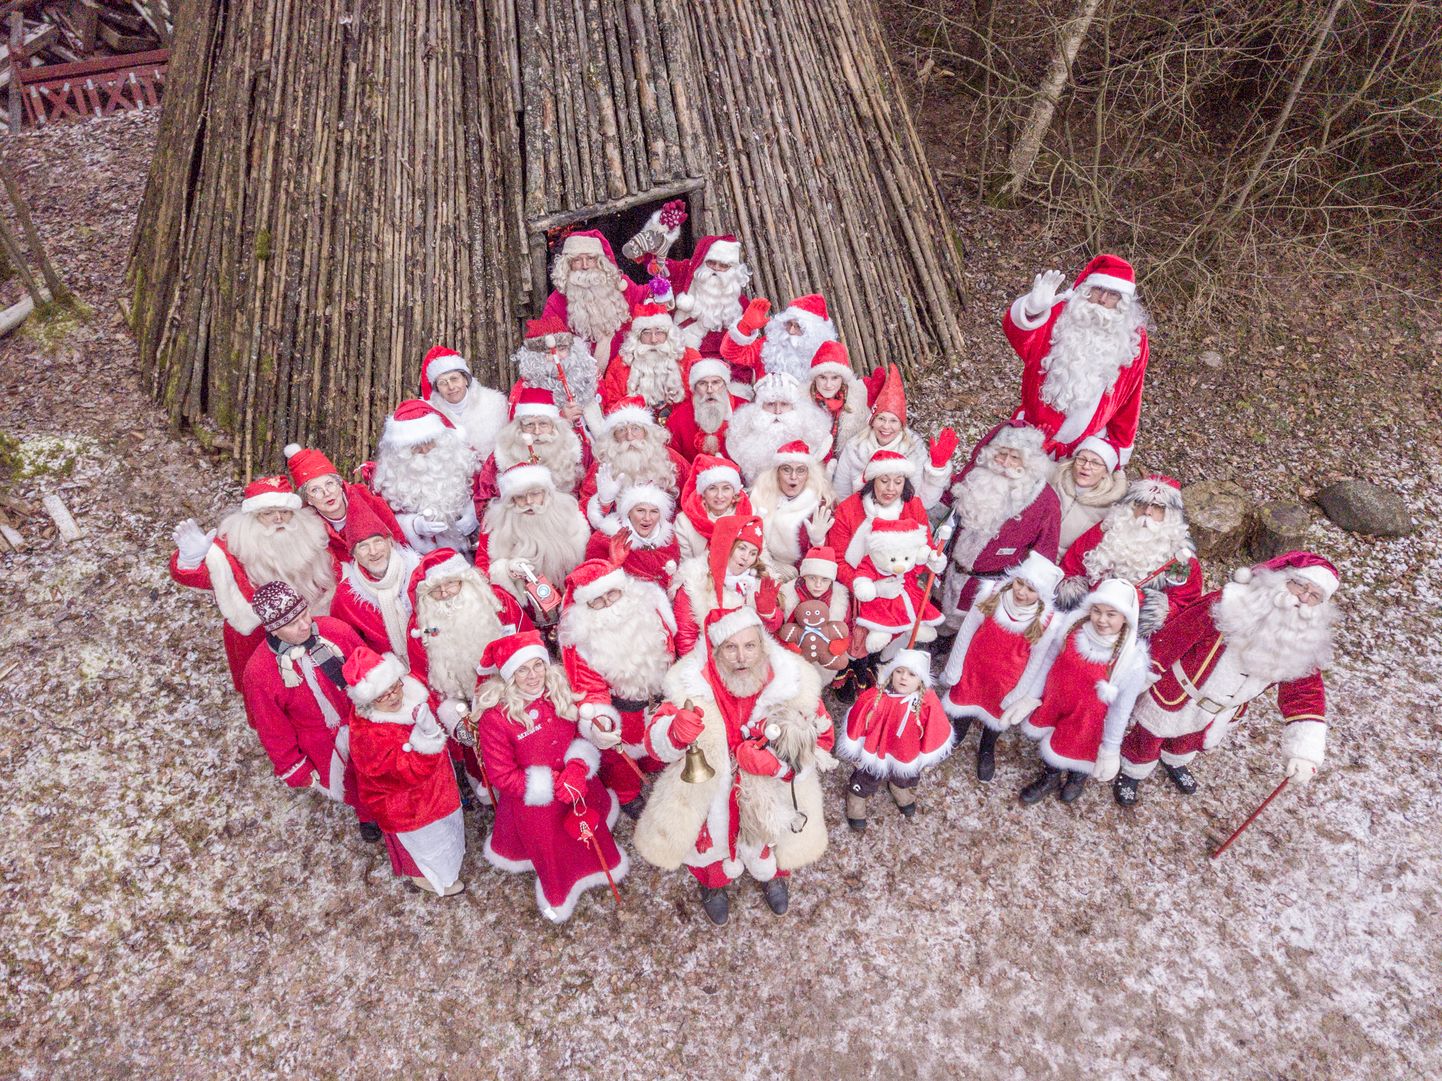 Jõuluvanad Eestis ei teadnud pikka aega, kus nende kodu asub. Nüüd on jõulutaatidel, päkapikkudel ja jõulumemmedel päris oma koht, Jõuluvana Korstna talu.